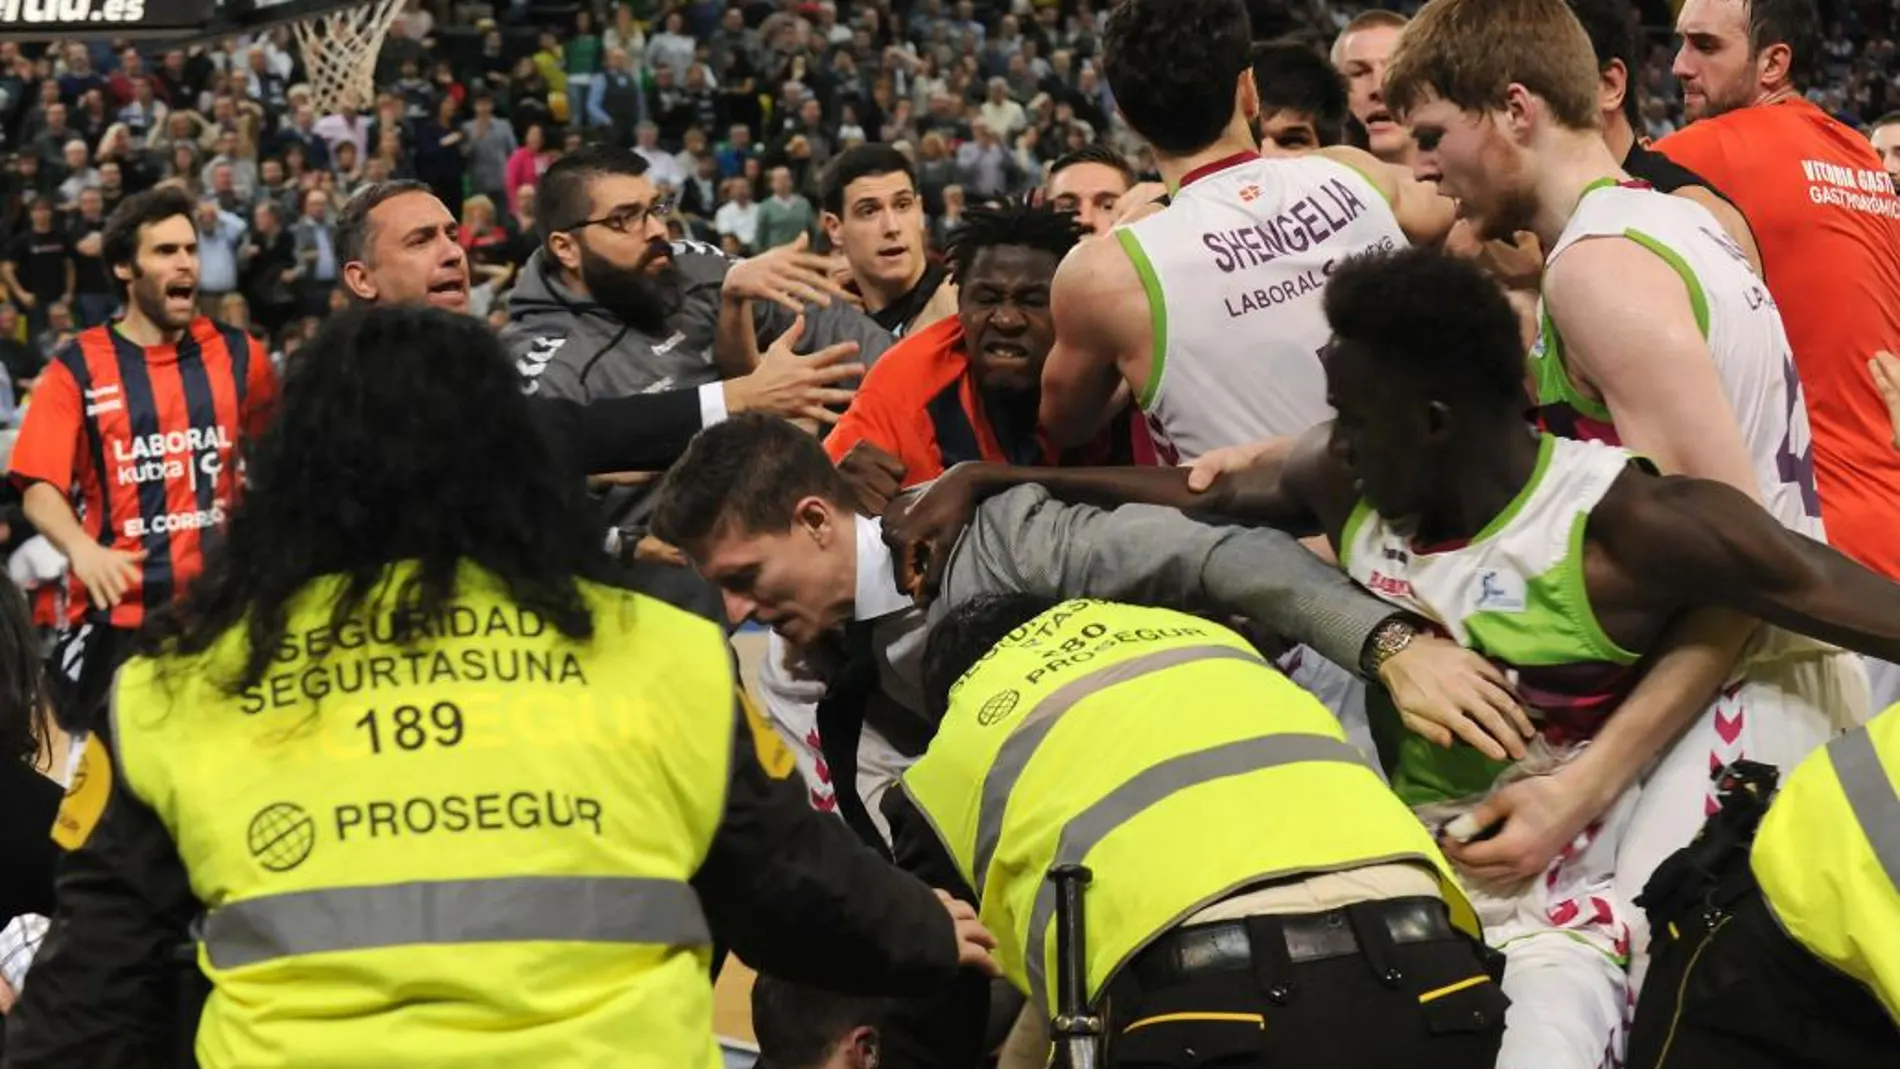 Jugadores del Bilbao Basket y del Laboral Kutxa Baskonia, se han enzarzado en una pelea al final del encuentro